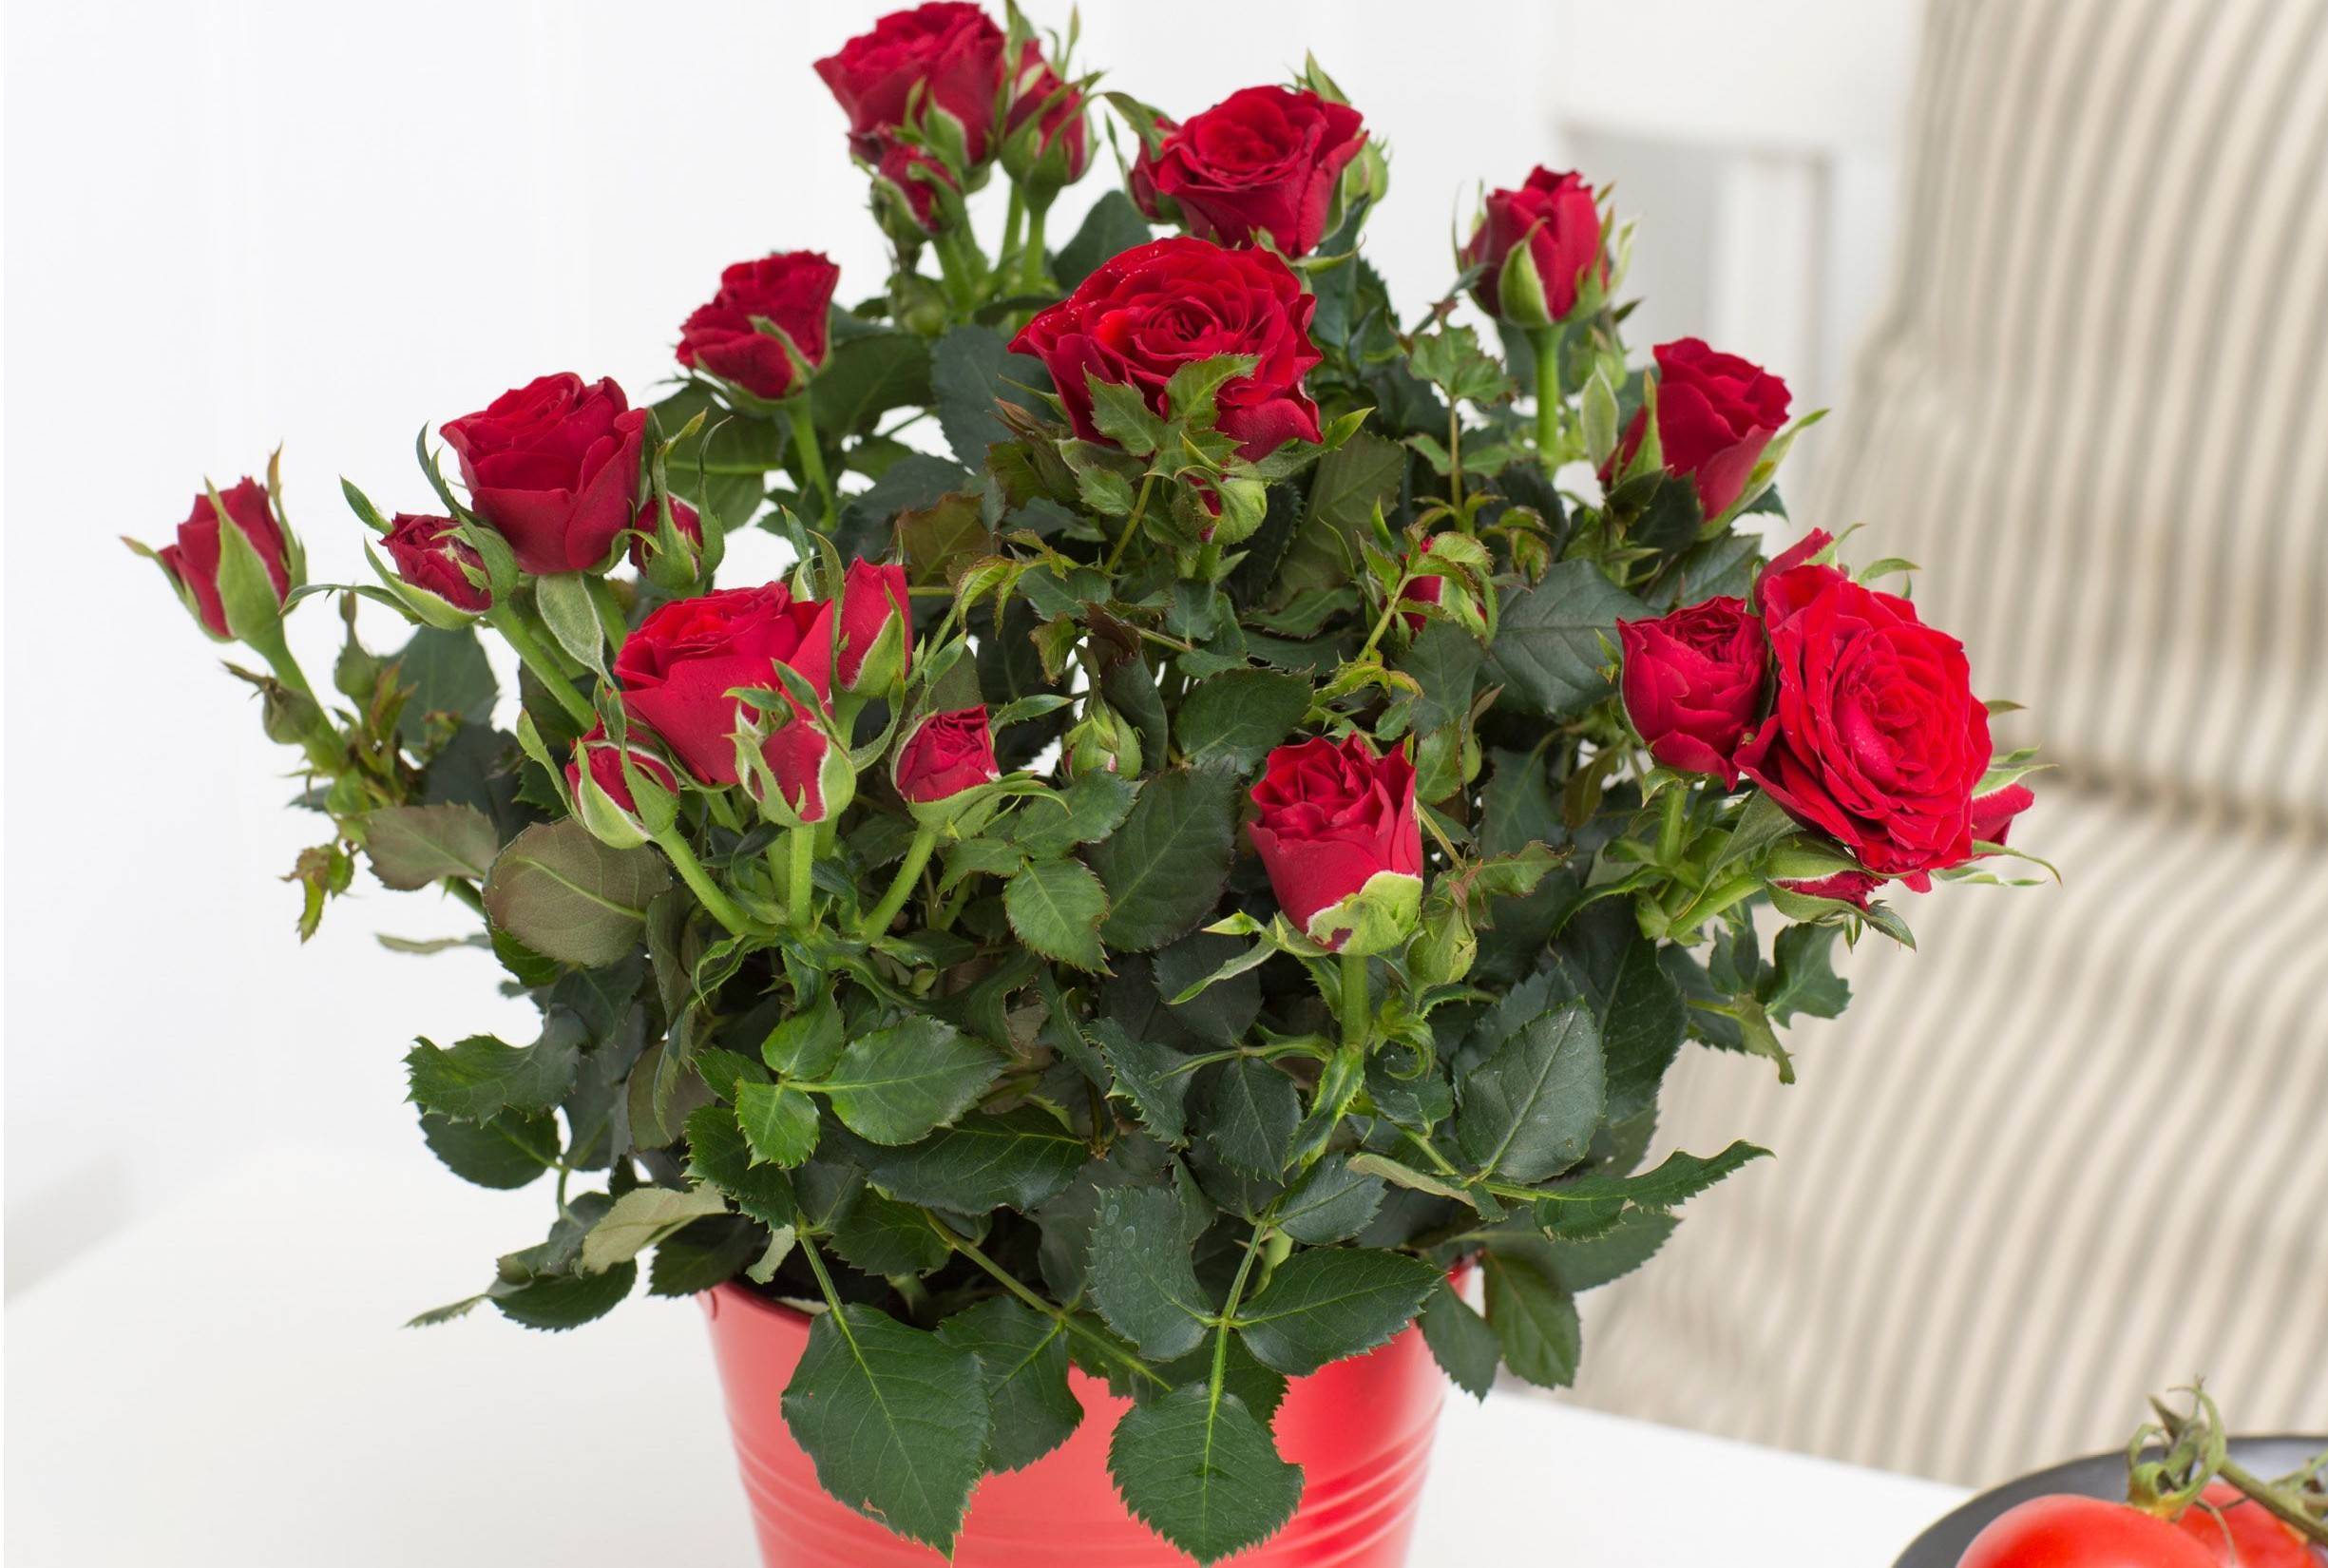 Розы – лучшие сорта и классификация